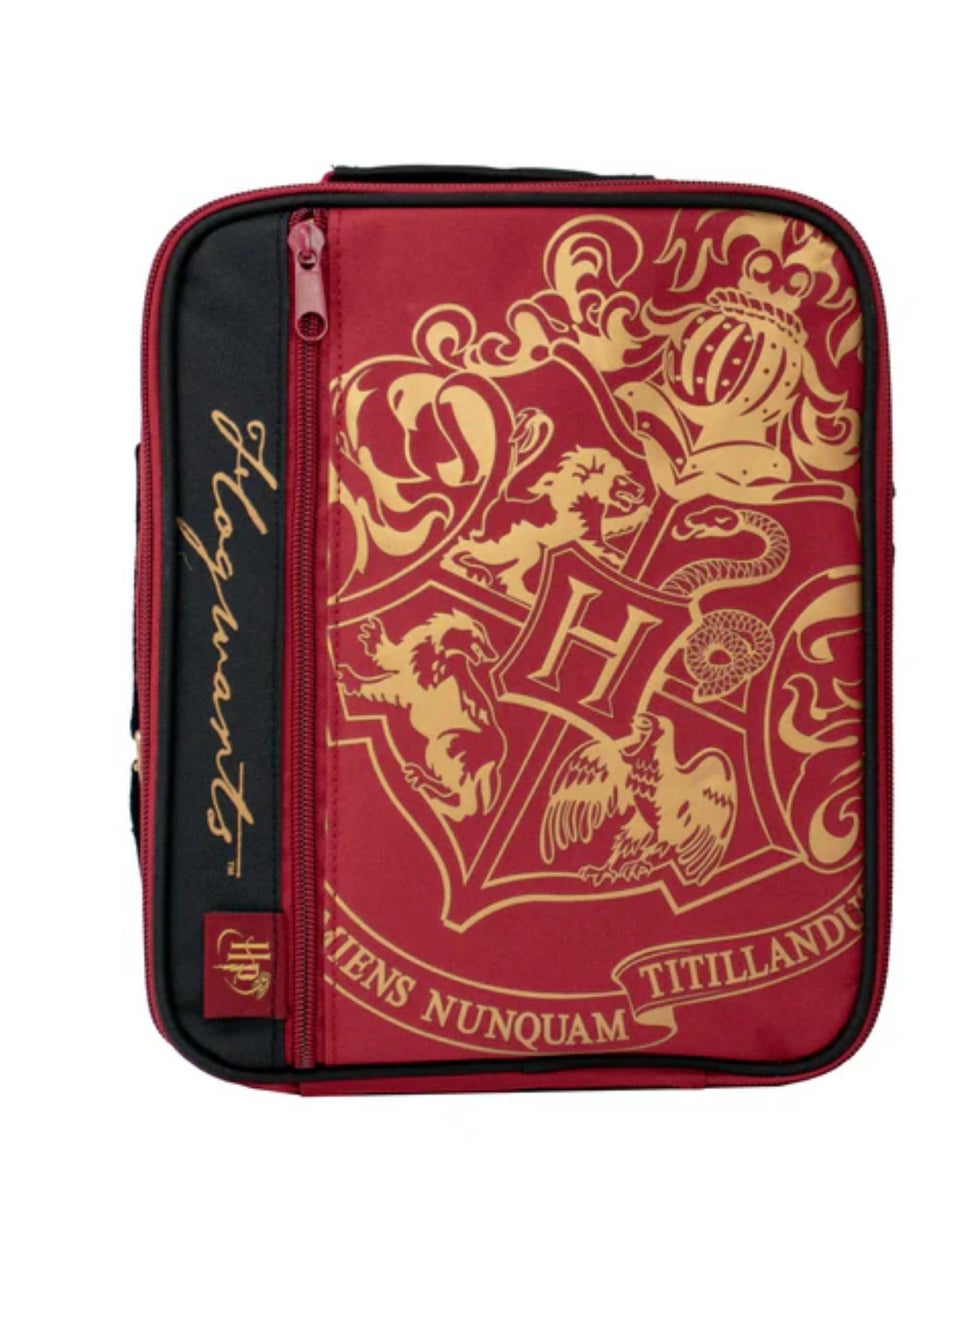 Harry Potter Lunch Bag - Deluxe 2 Pocket - Burgundy - Crest